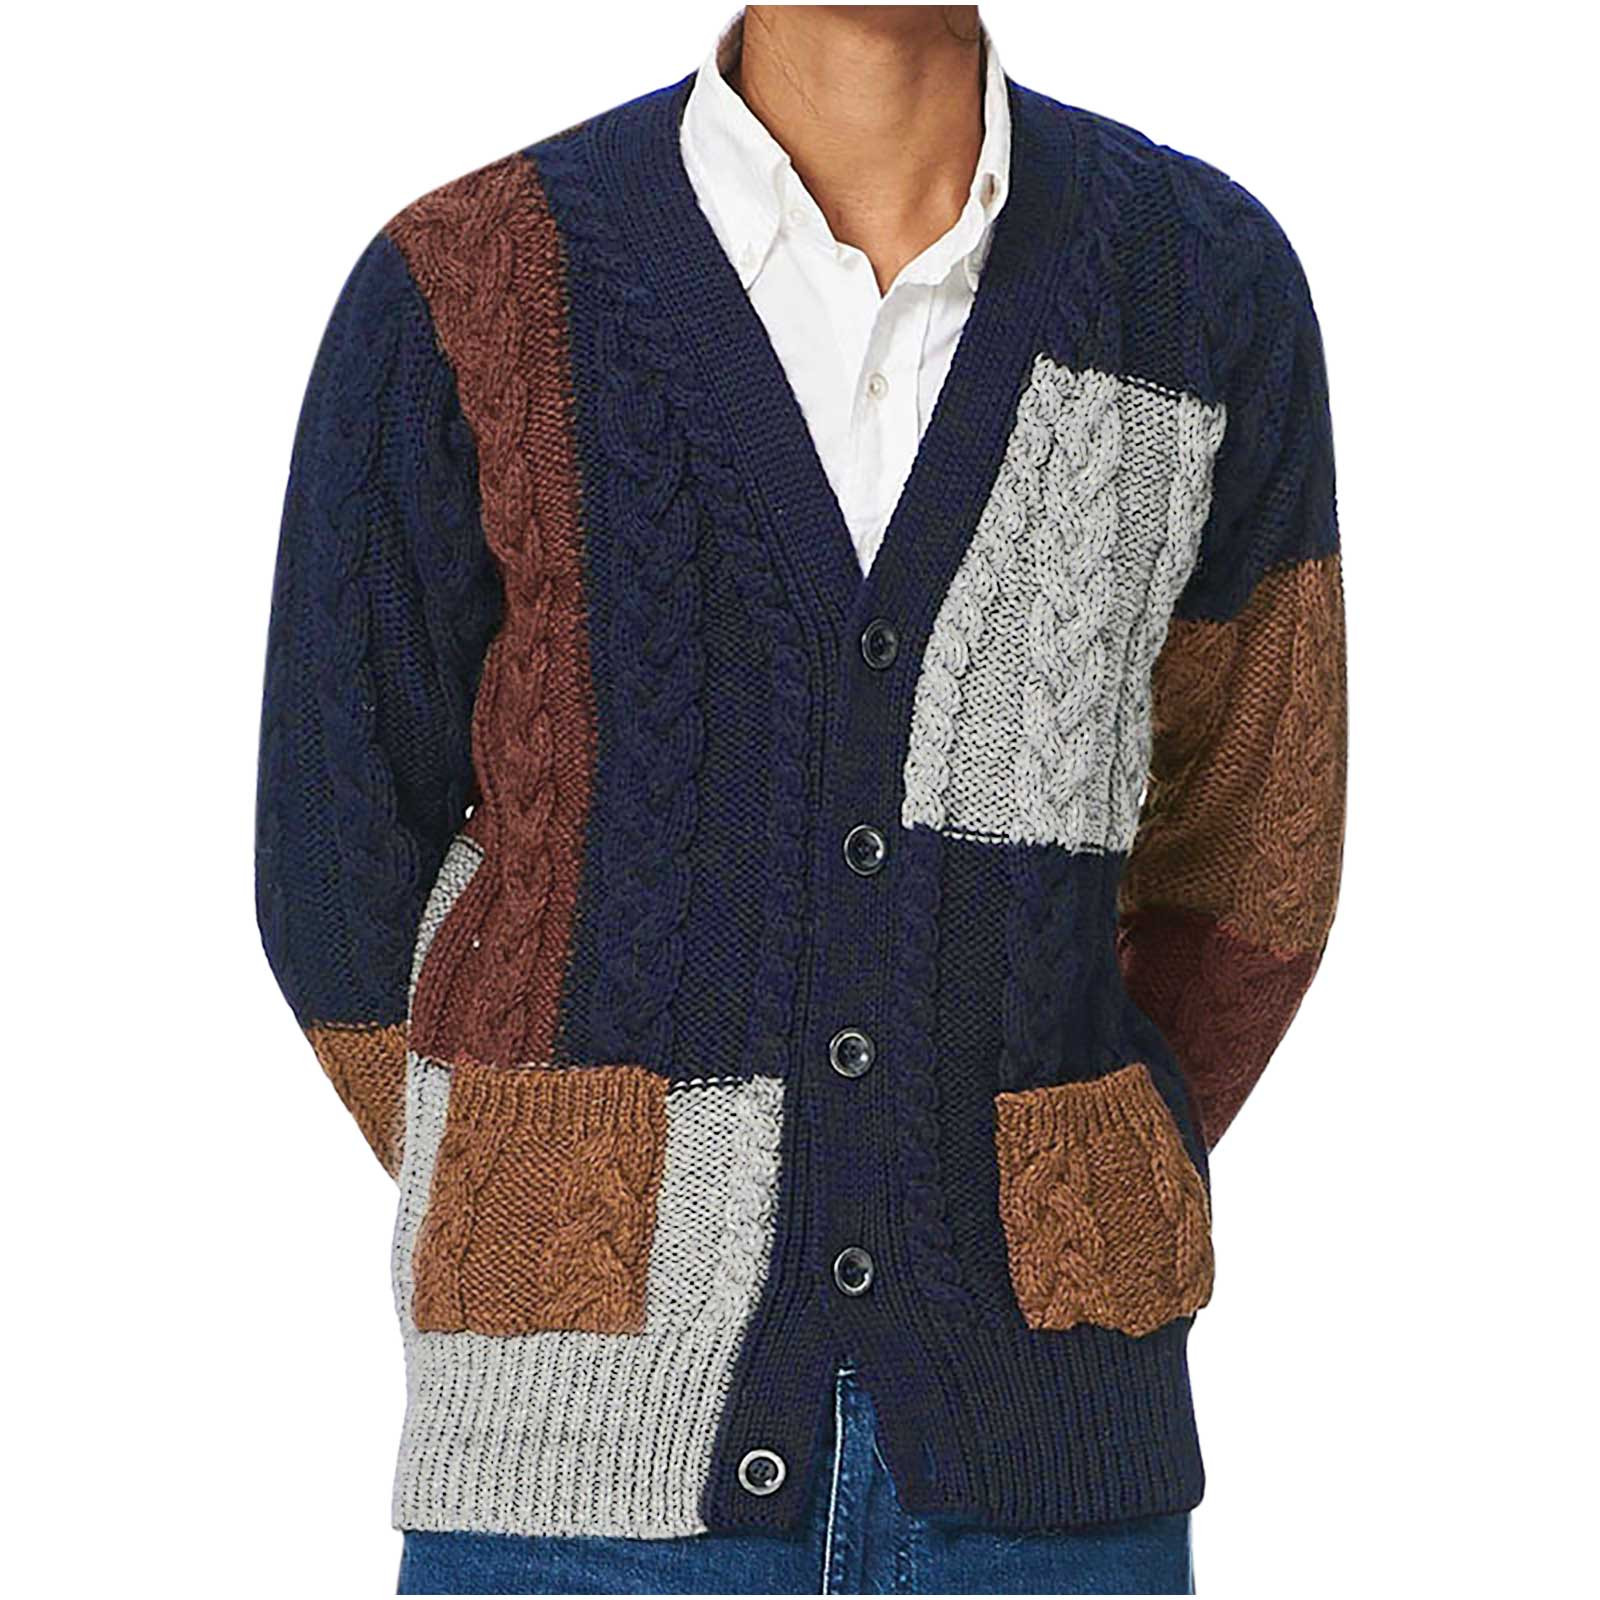 Awdenio Winter Sweater for Men Sale, Men's Fashion and Winter Lapel ...